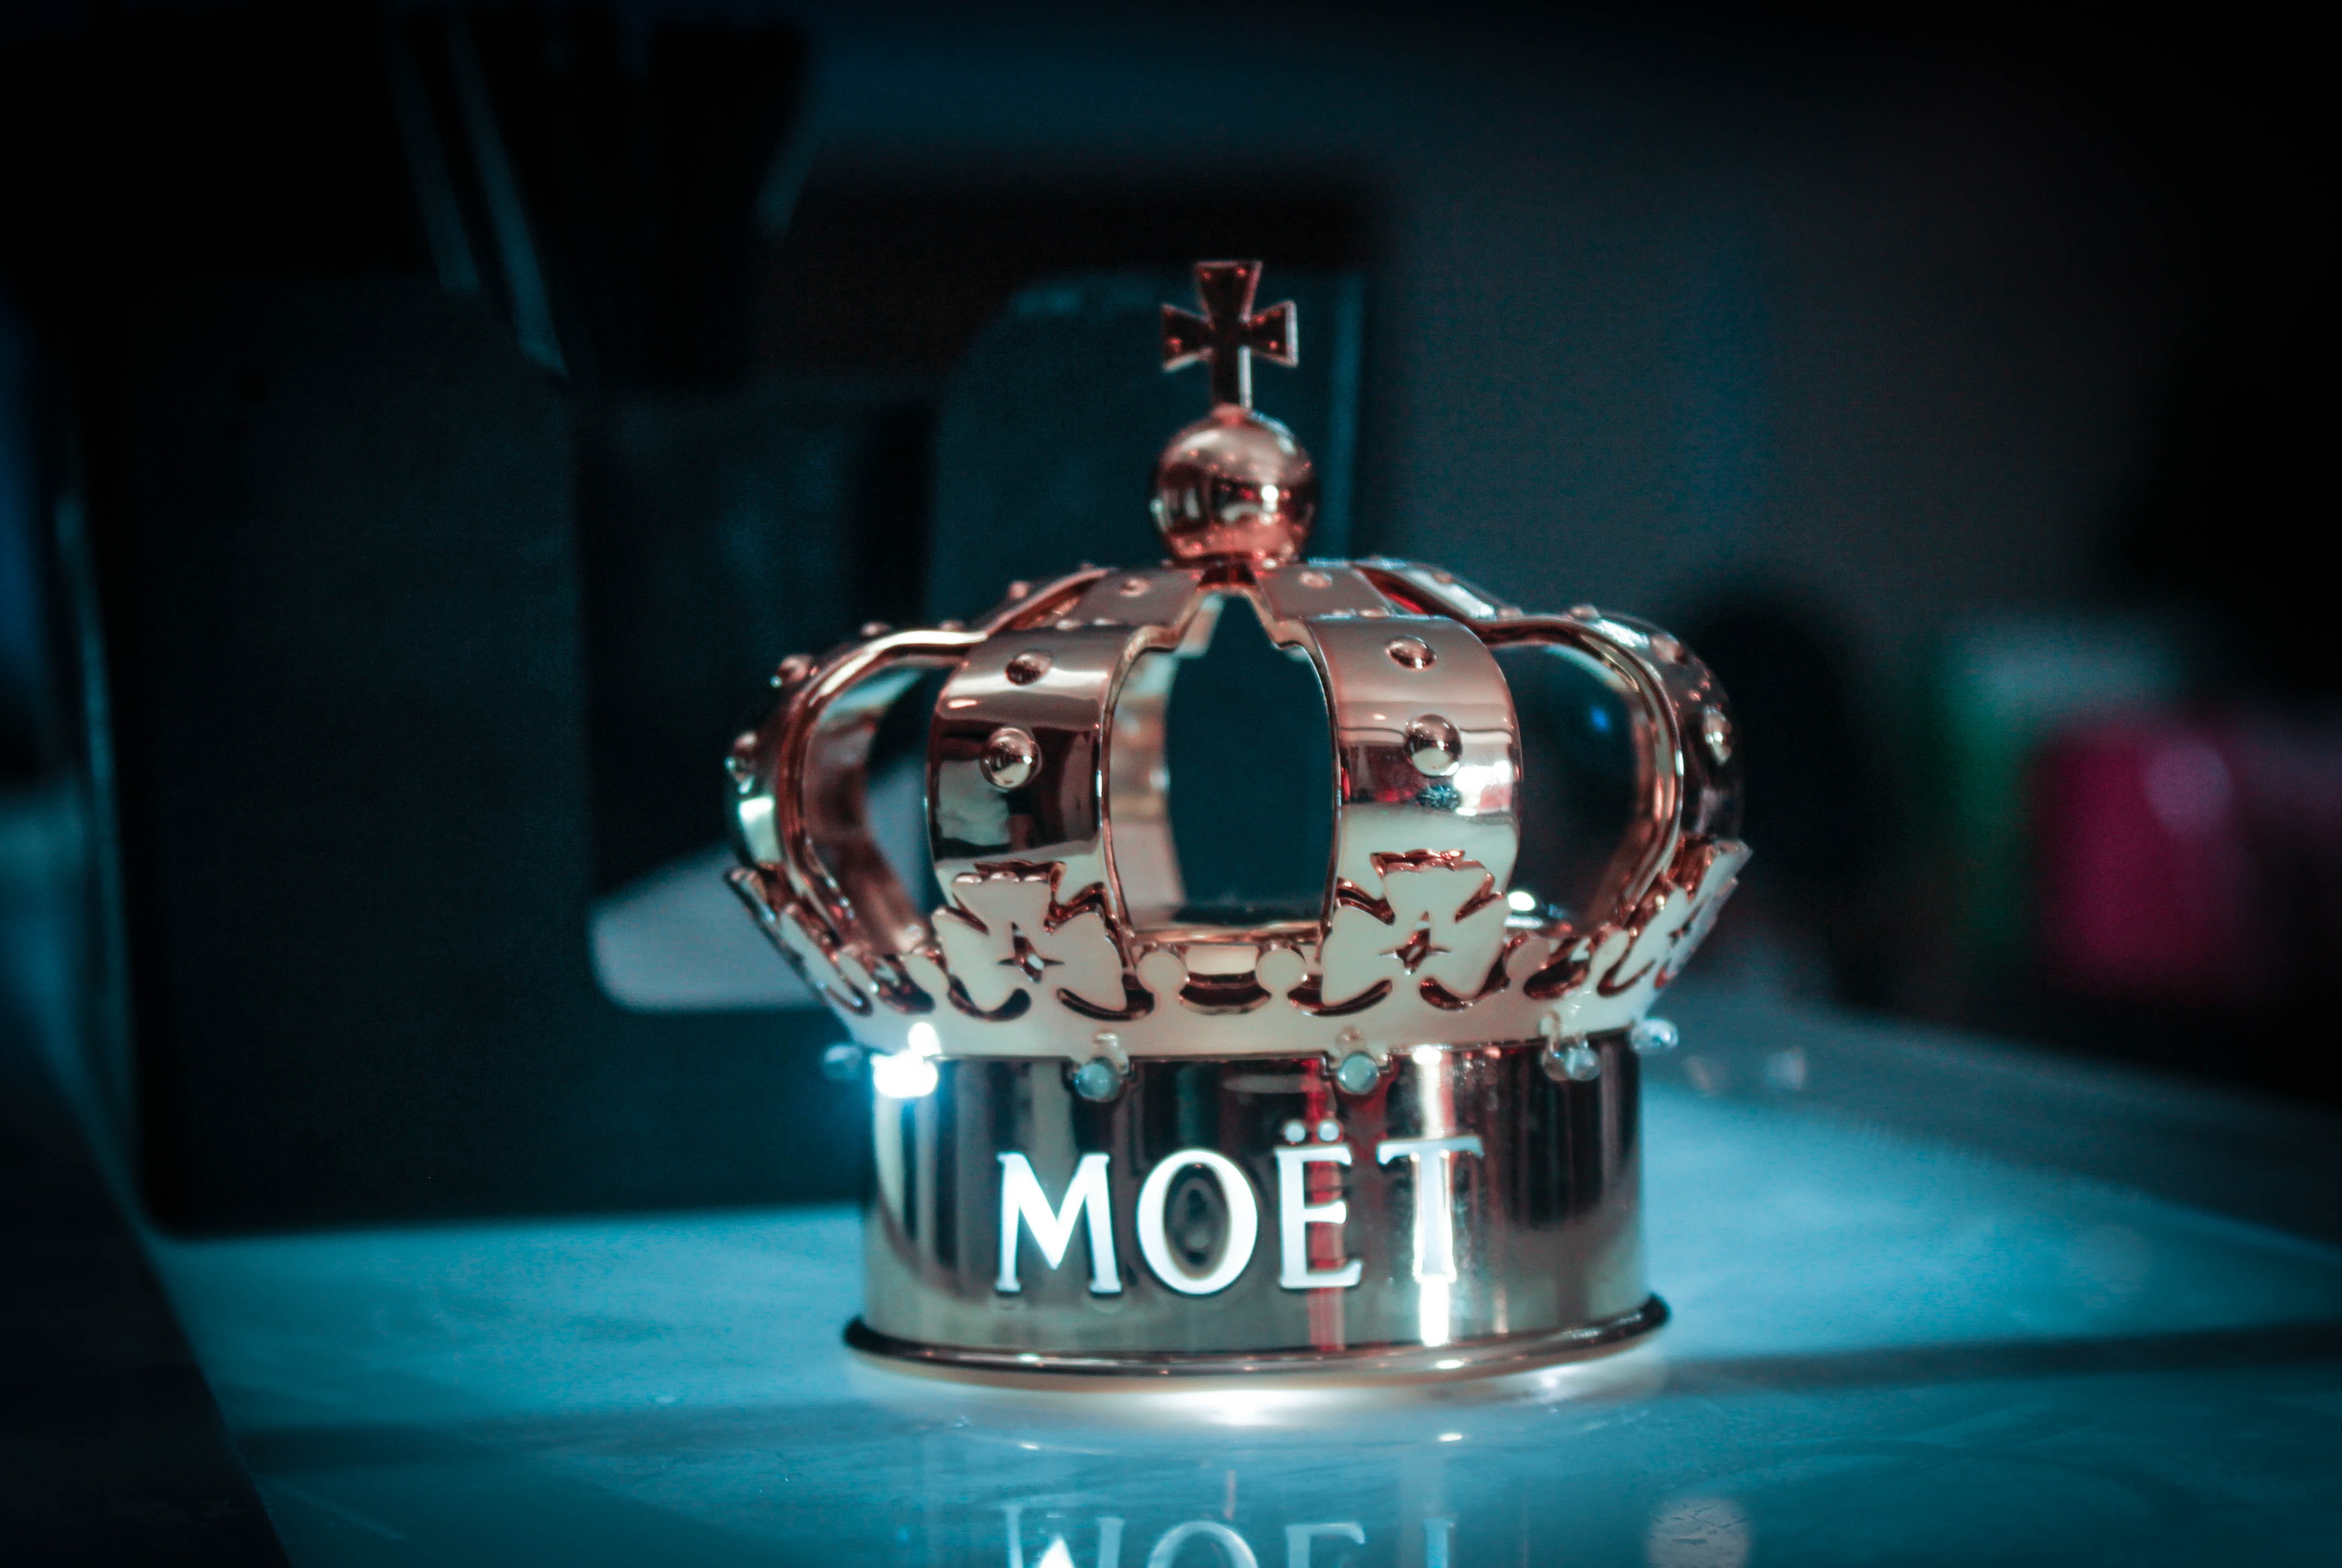 MOET crown